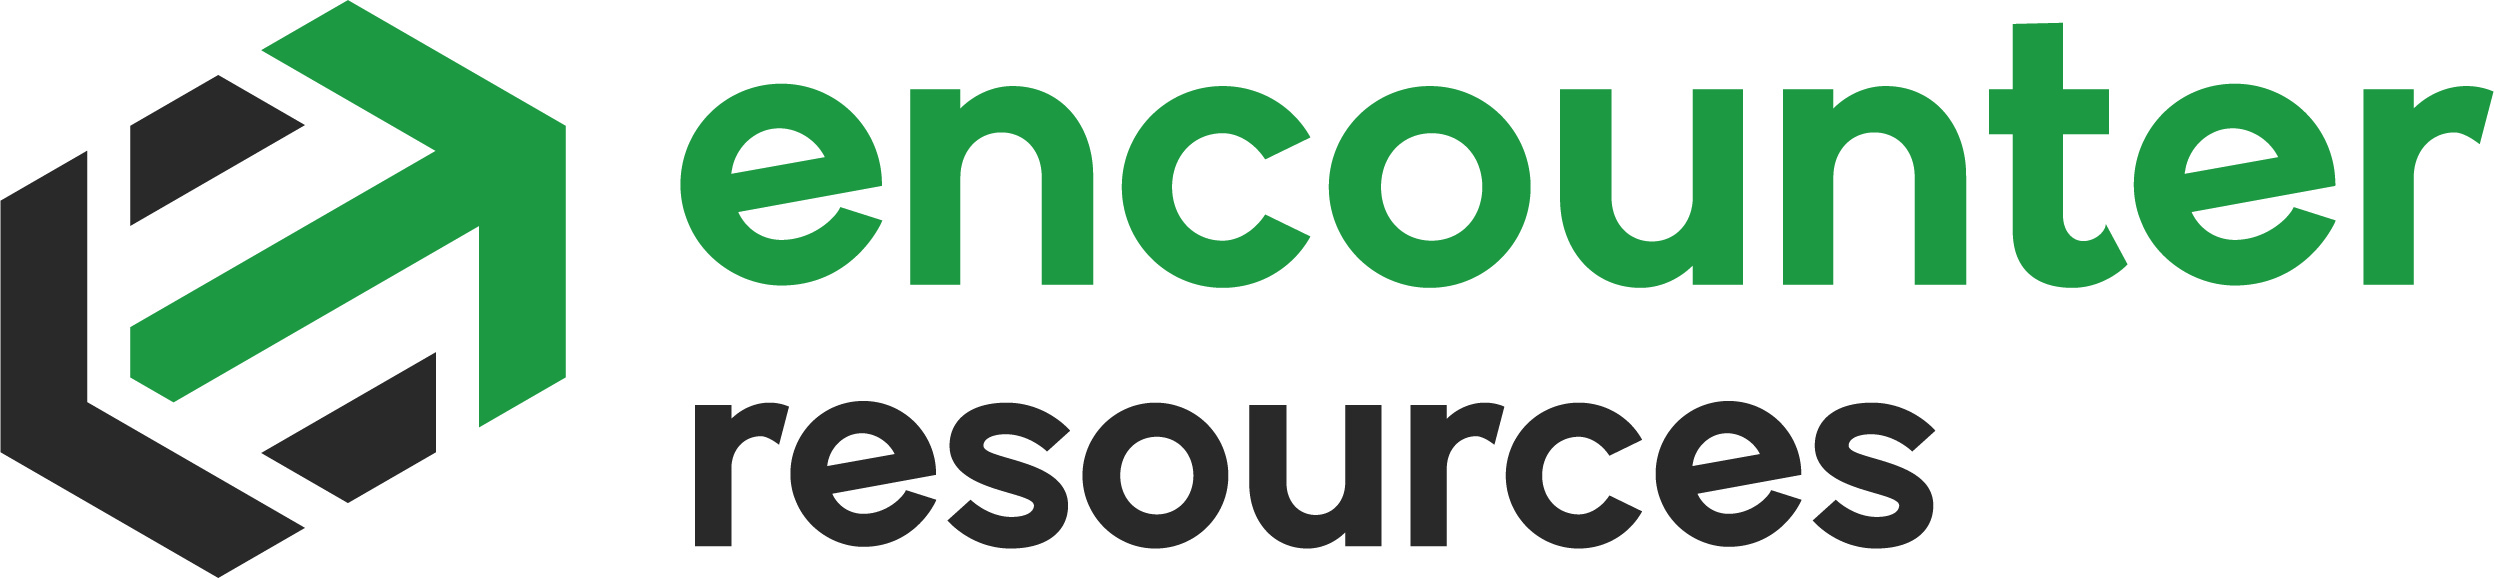 Encounter Resources – ENR